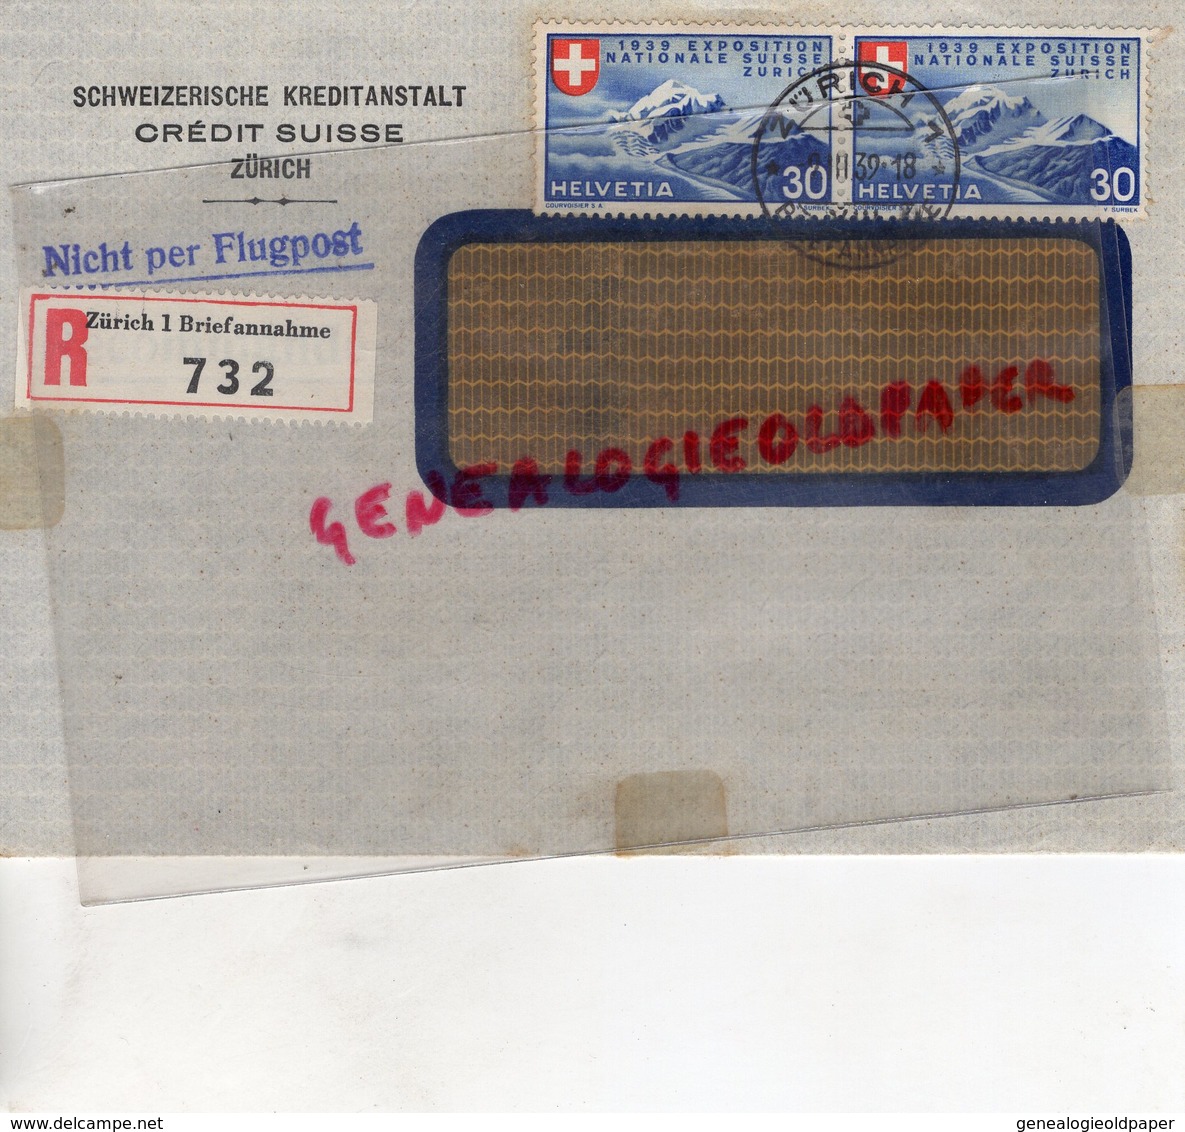 SUISSE - ZURICH- RARE ENVELOPPE SCHWEIZERISCHE KREDITANSTALT- CREDIT SUISSE -1939- NICHT PER FLUGPOST-SAINT JUNIEN 87 - Zwitserland